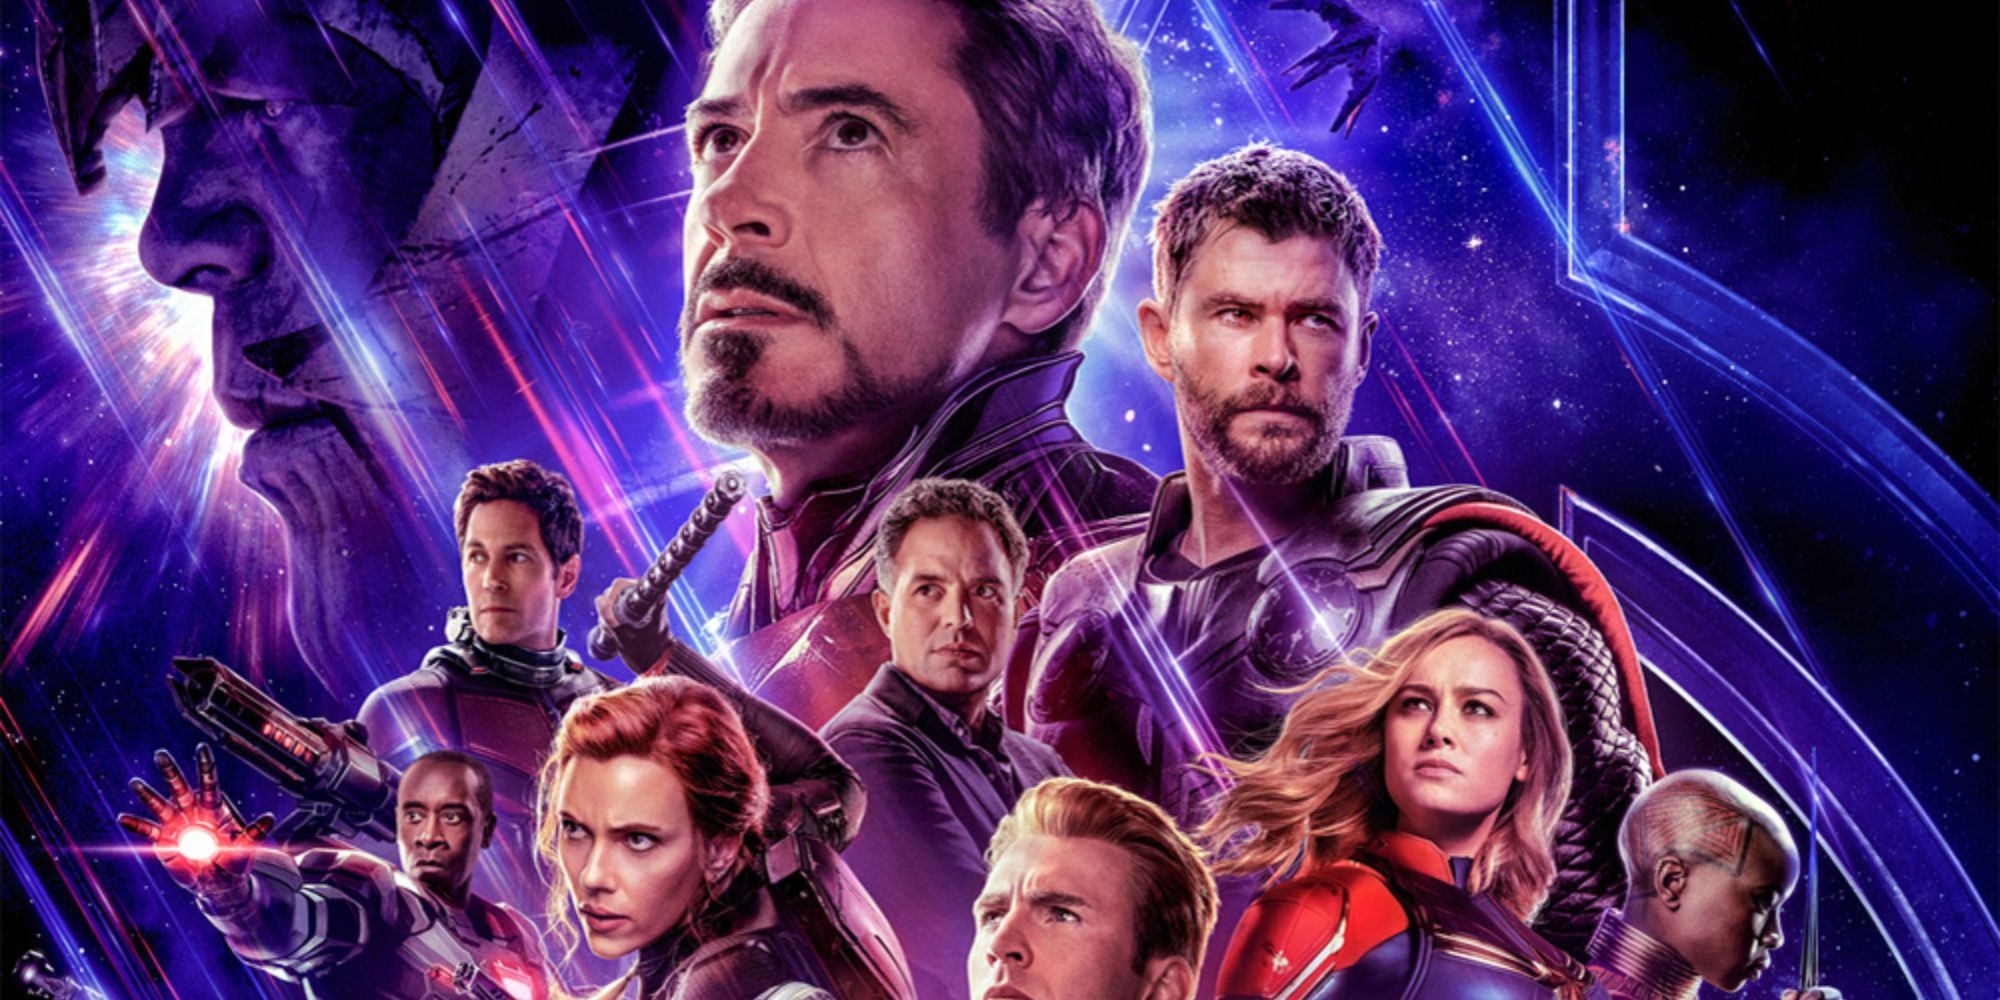 Promotional image for 'Avengers: Endgame'